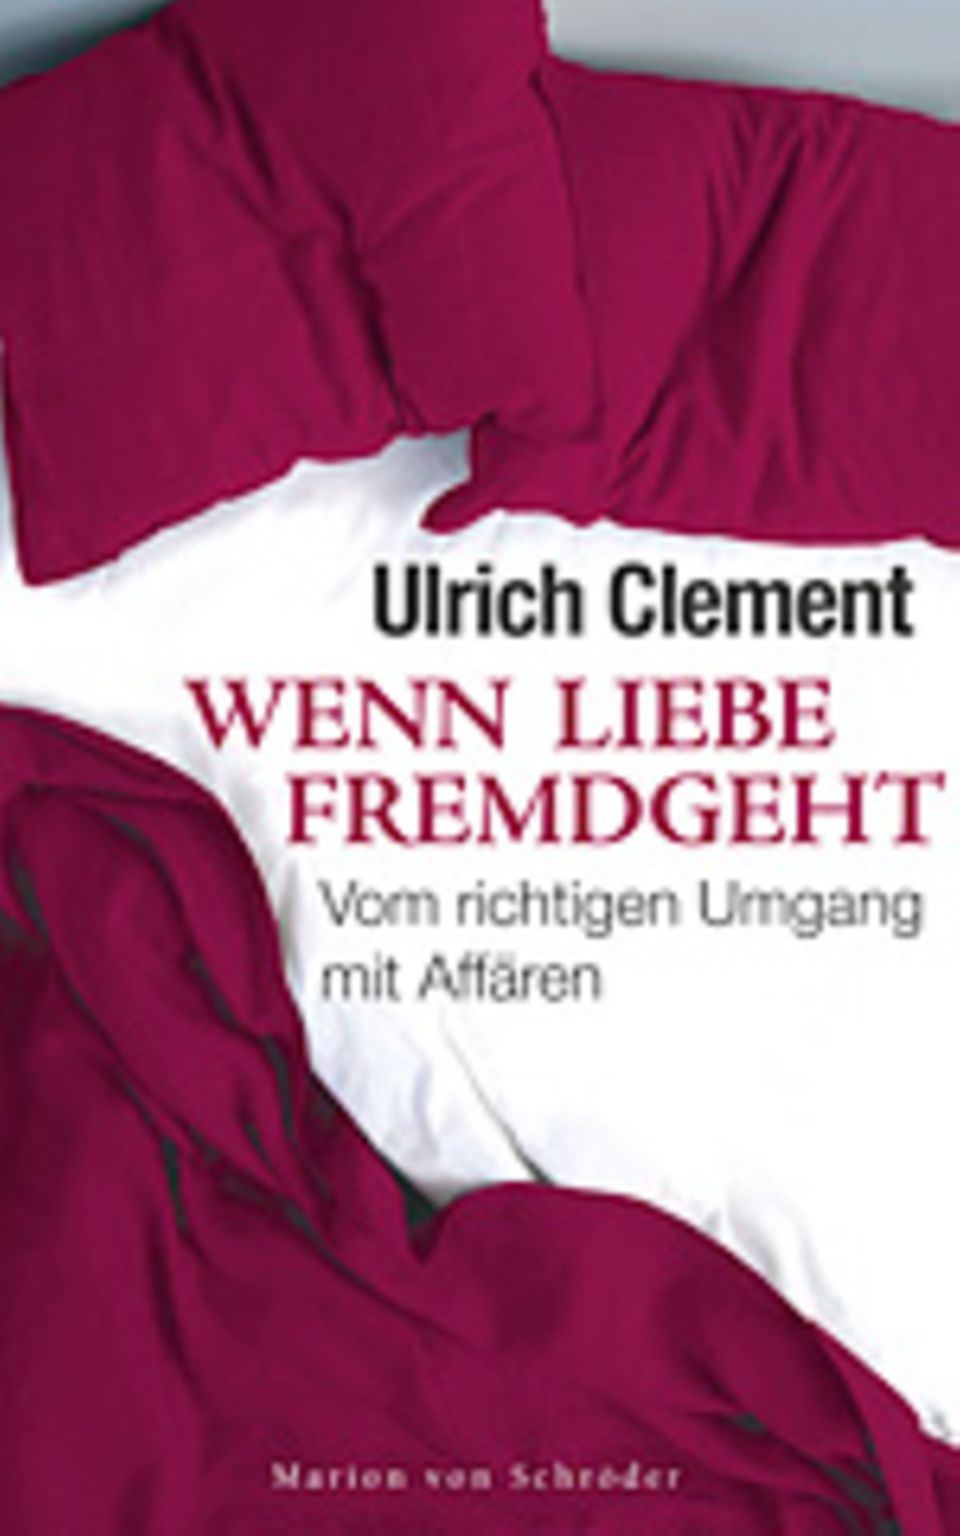 Ulrich Clement: "Einen Seitensprung nicht persönlich nehmen"